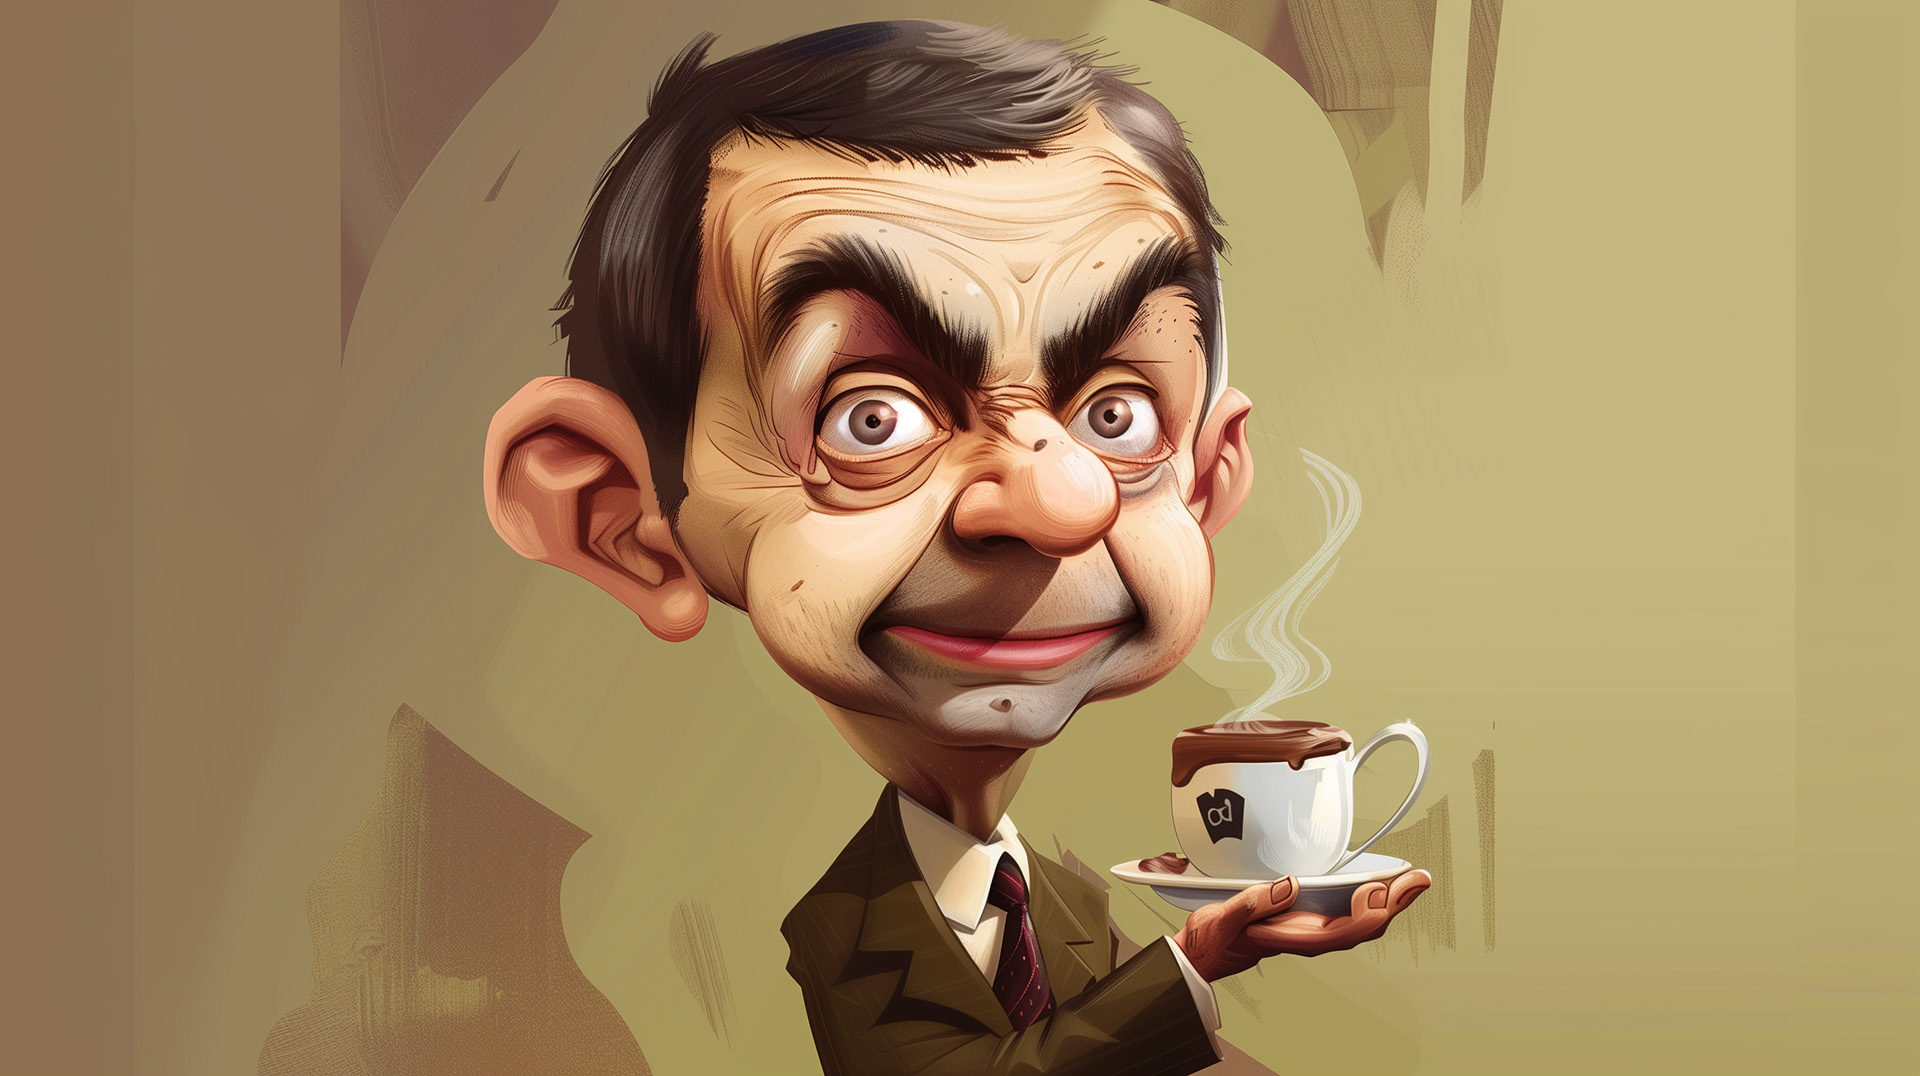 Illustration of Mr. Bean